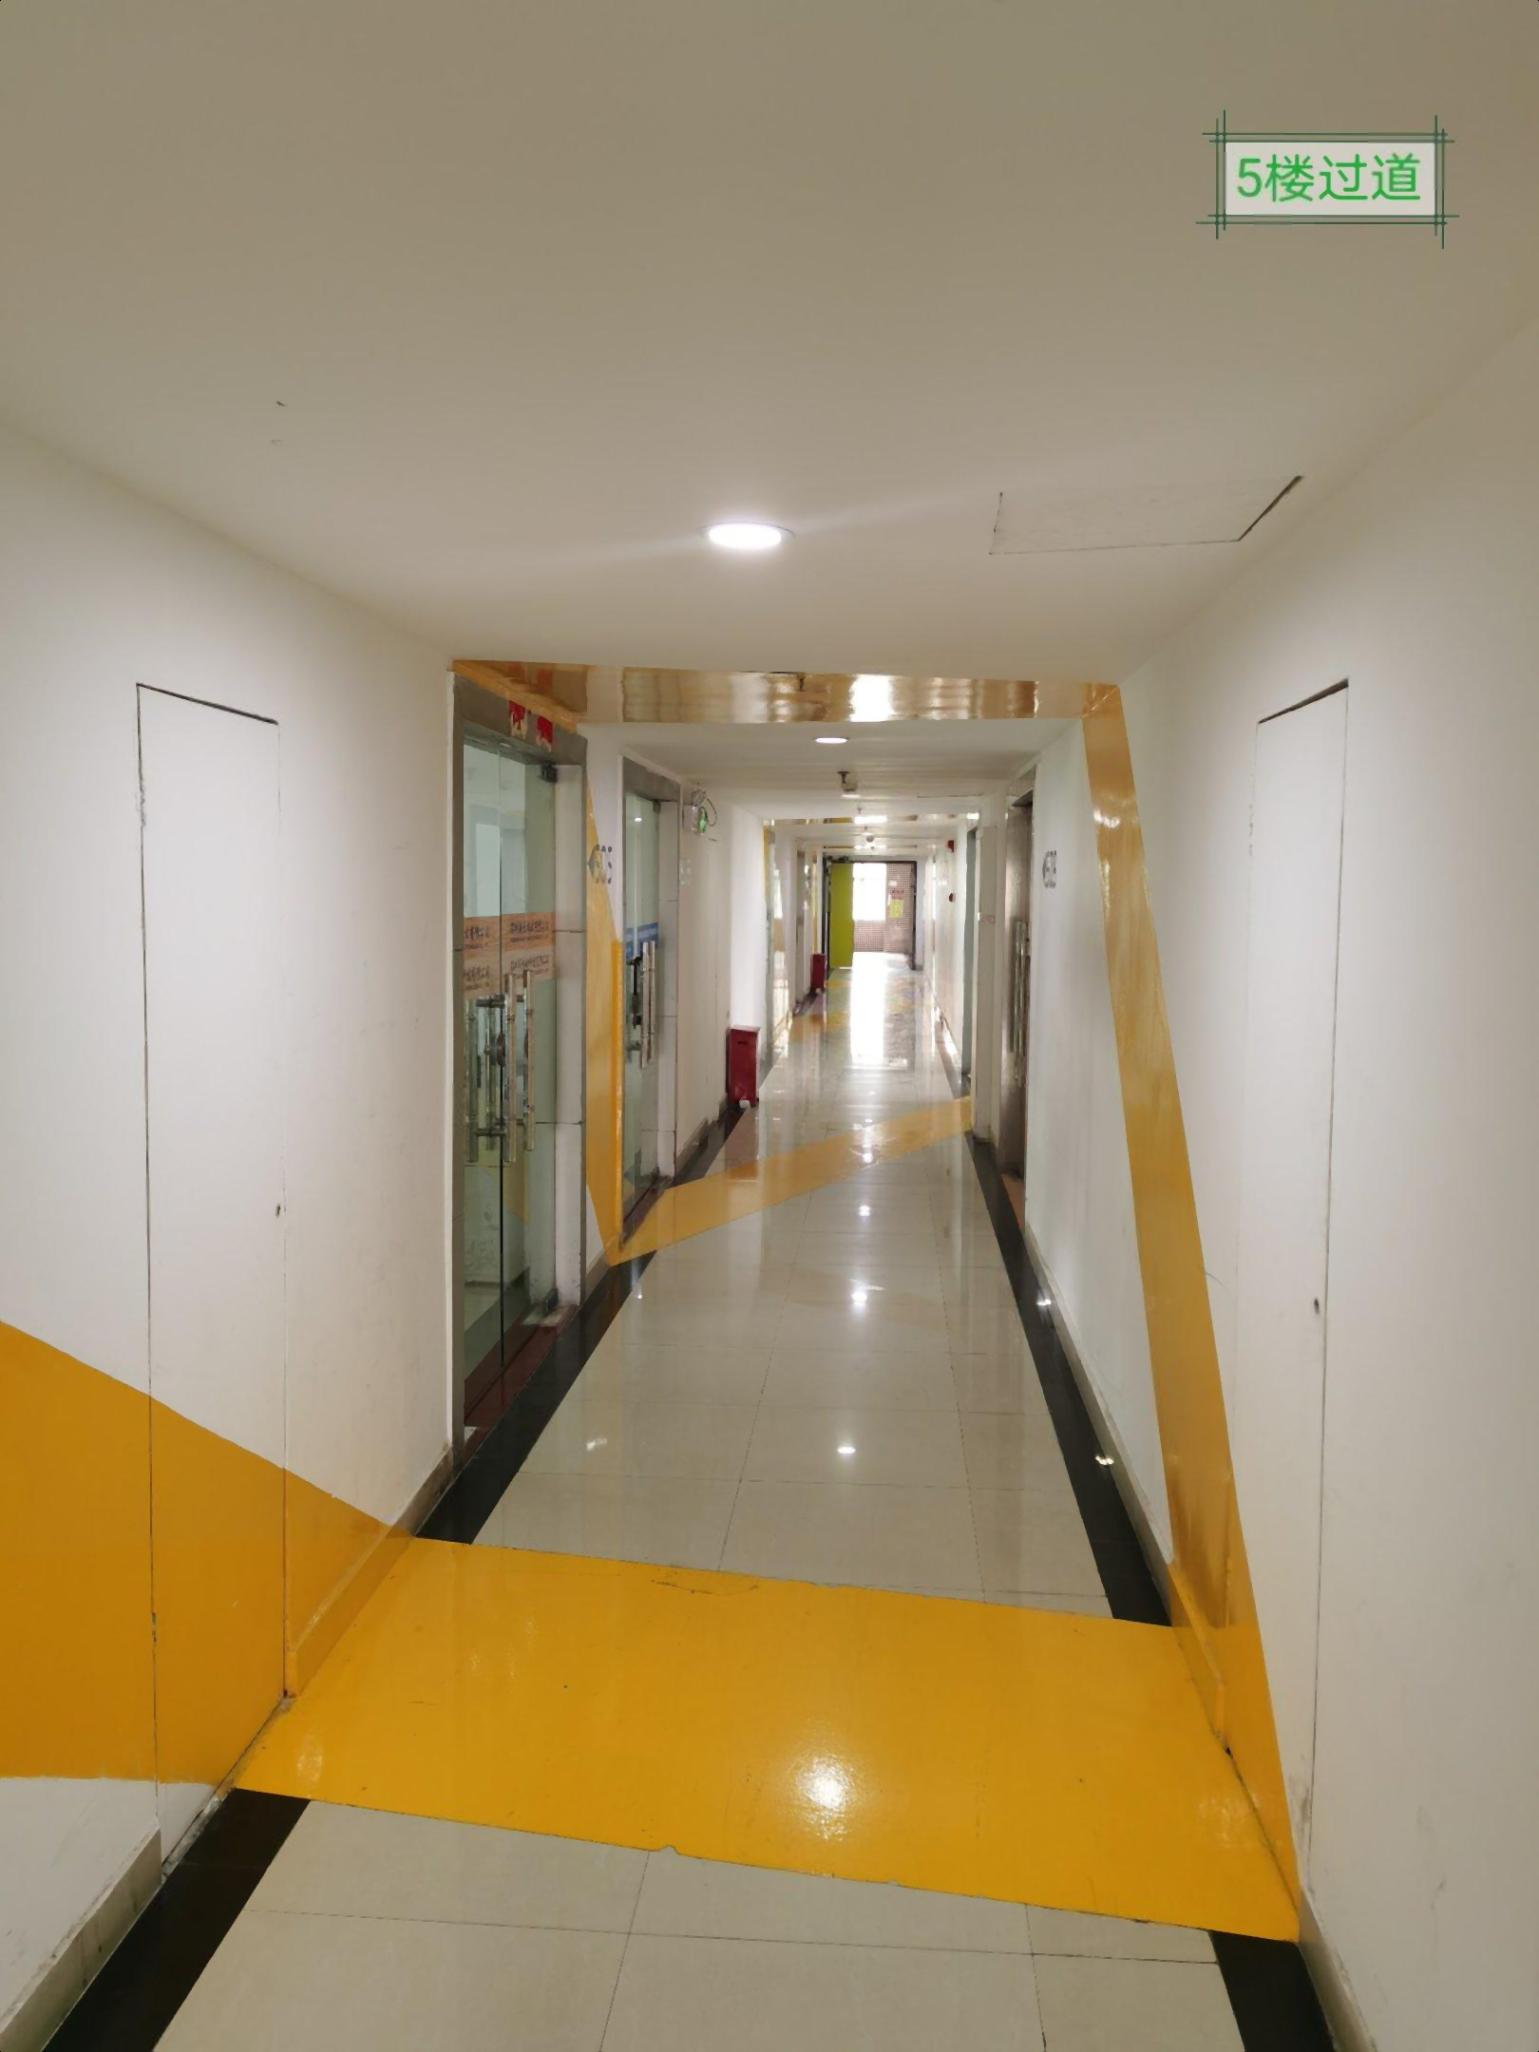 沙井地铁站国税局小面积精装修办公室出租带空调和办公家具